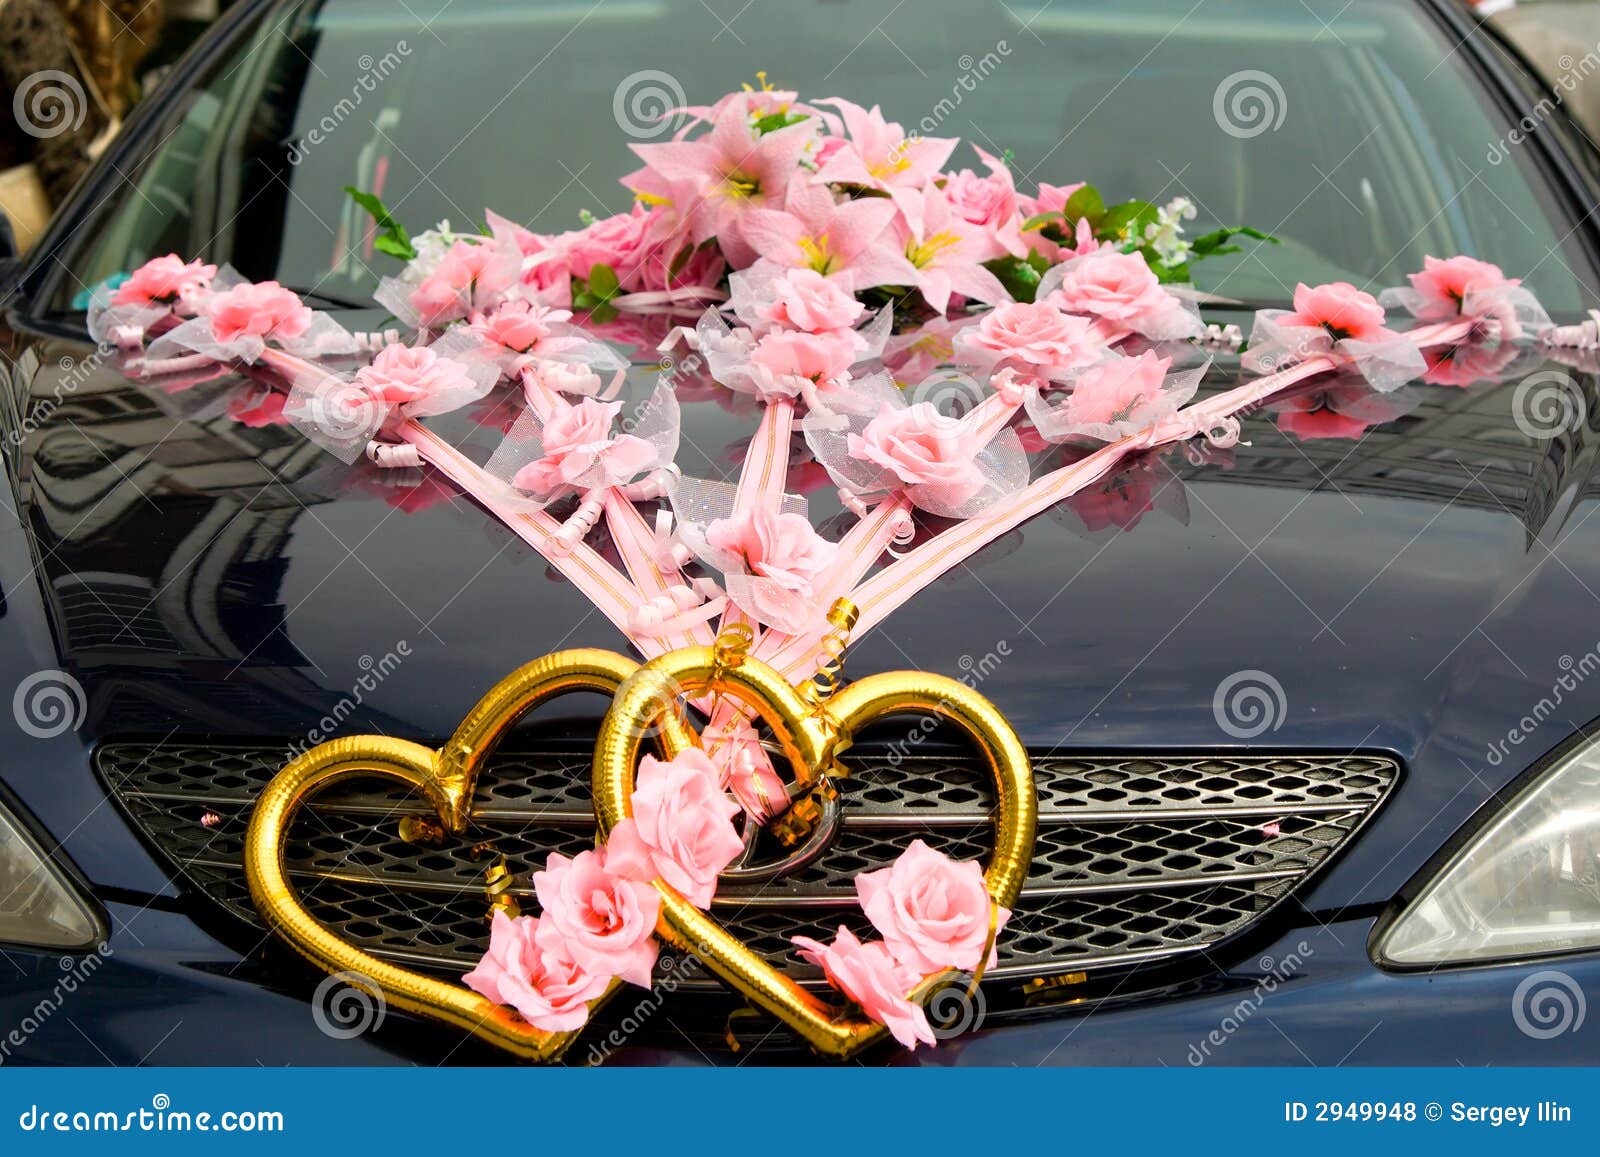 Wedding Decorations Car Wedding Car Decoration, Cardeco In 2019, Wedding  Car Decorations in